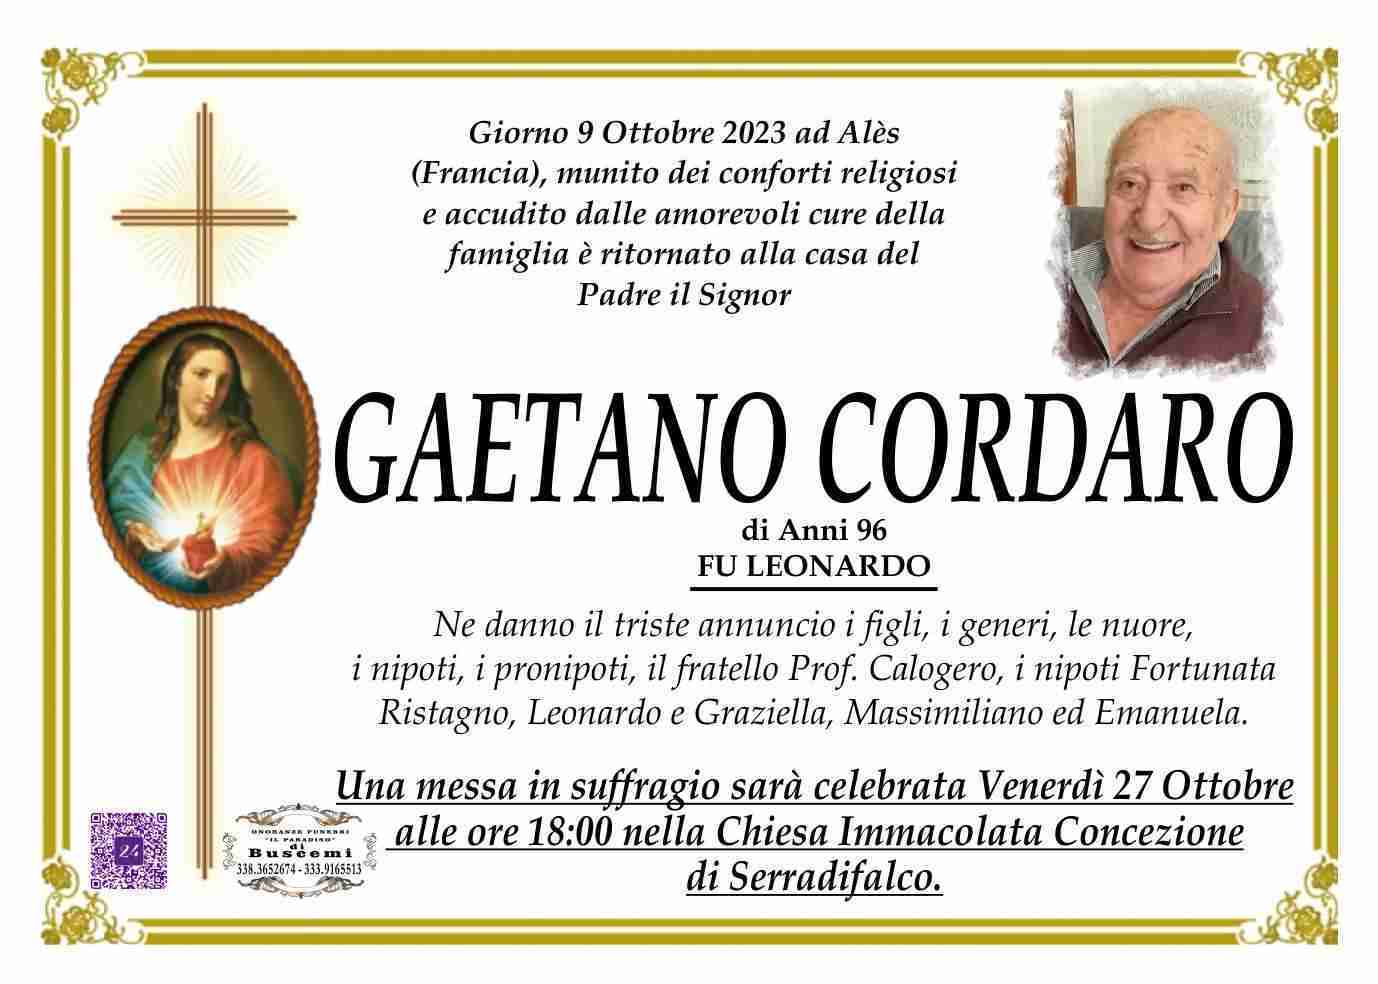 Gaetano Cordaro